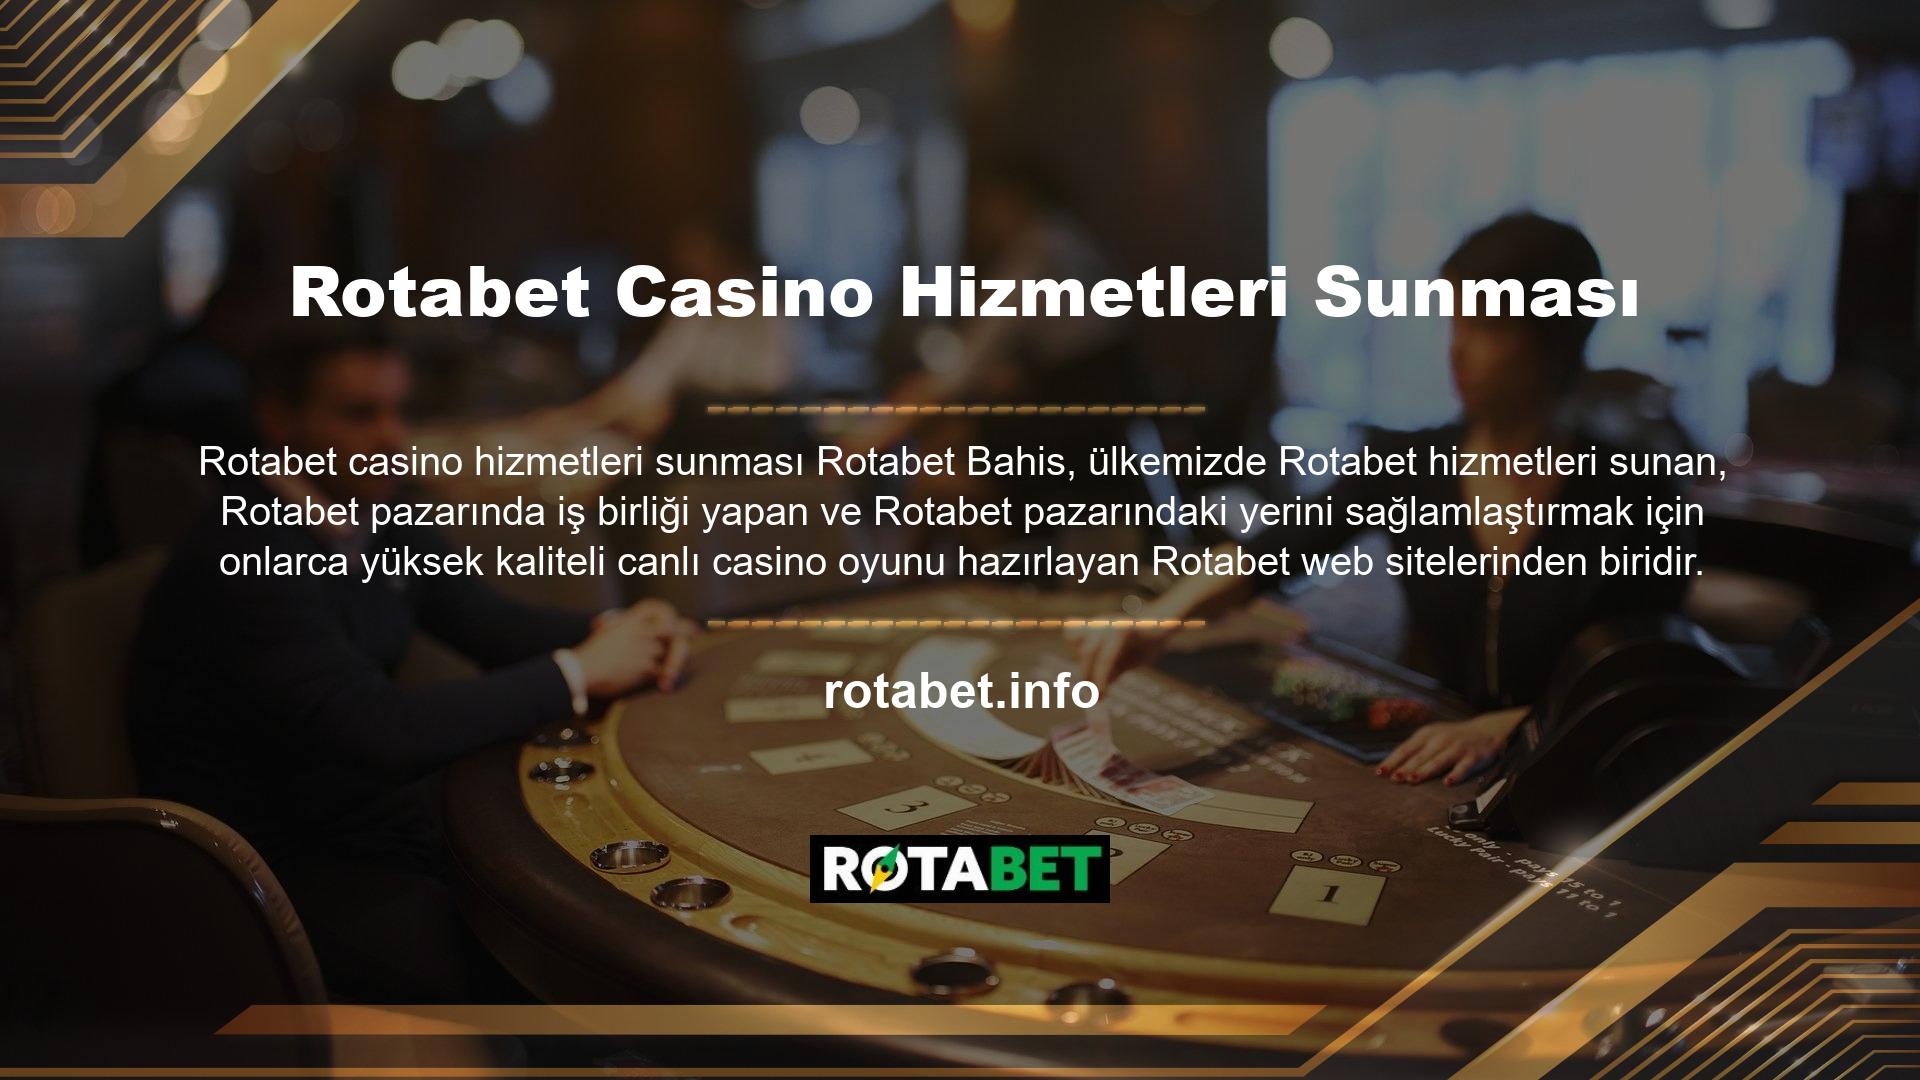 Rotabet Gaming muhtemelen Rotabet canlı casino oyunlarını daha iyi ve daha ilgi çekici hale getiren web sitelerinden biridir